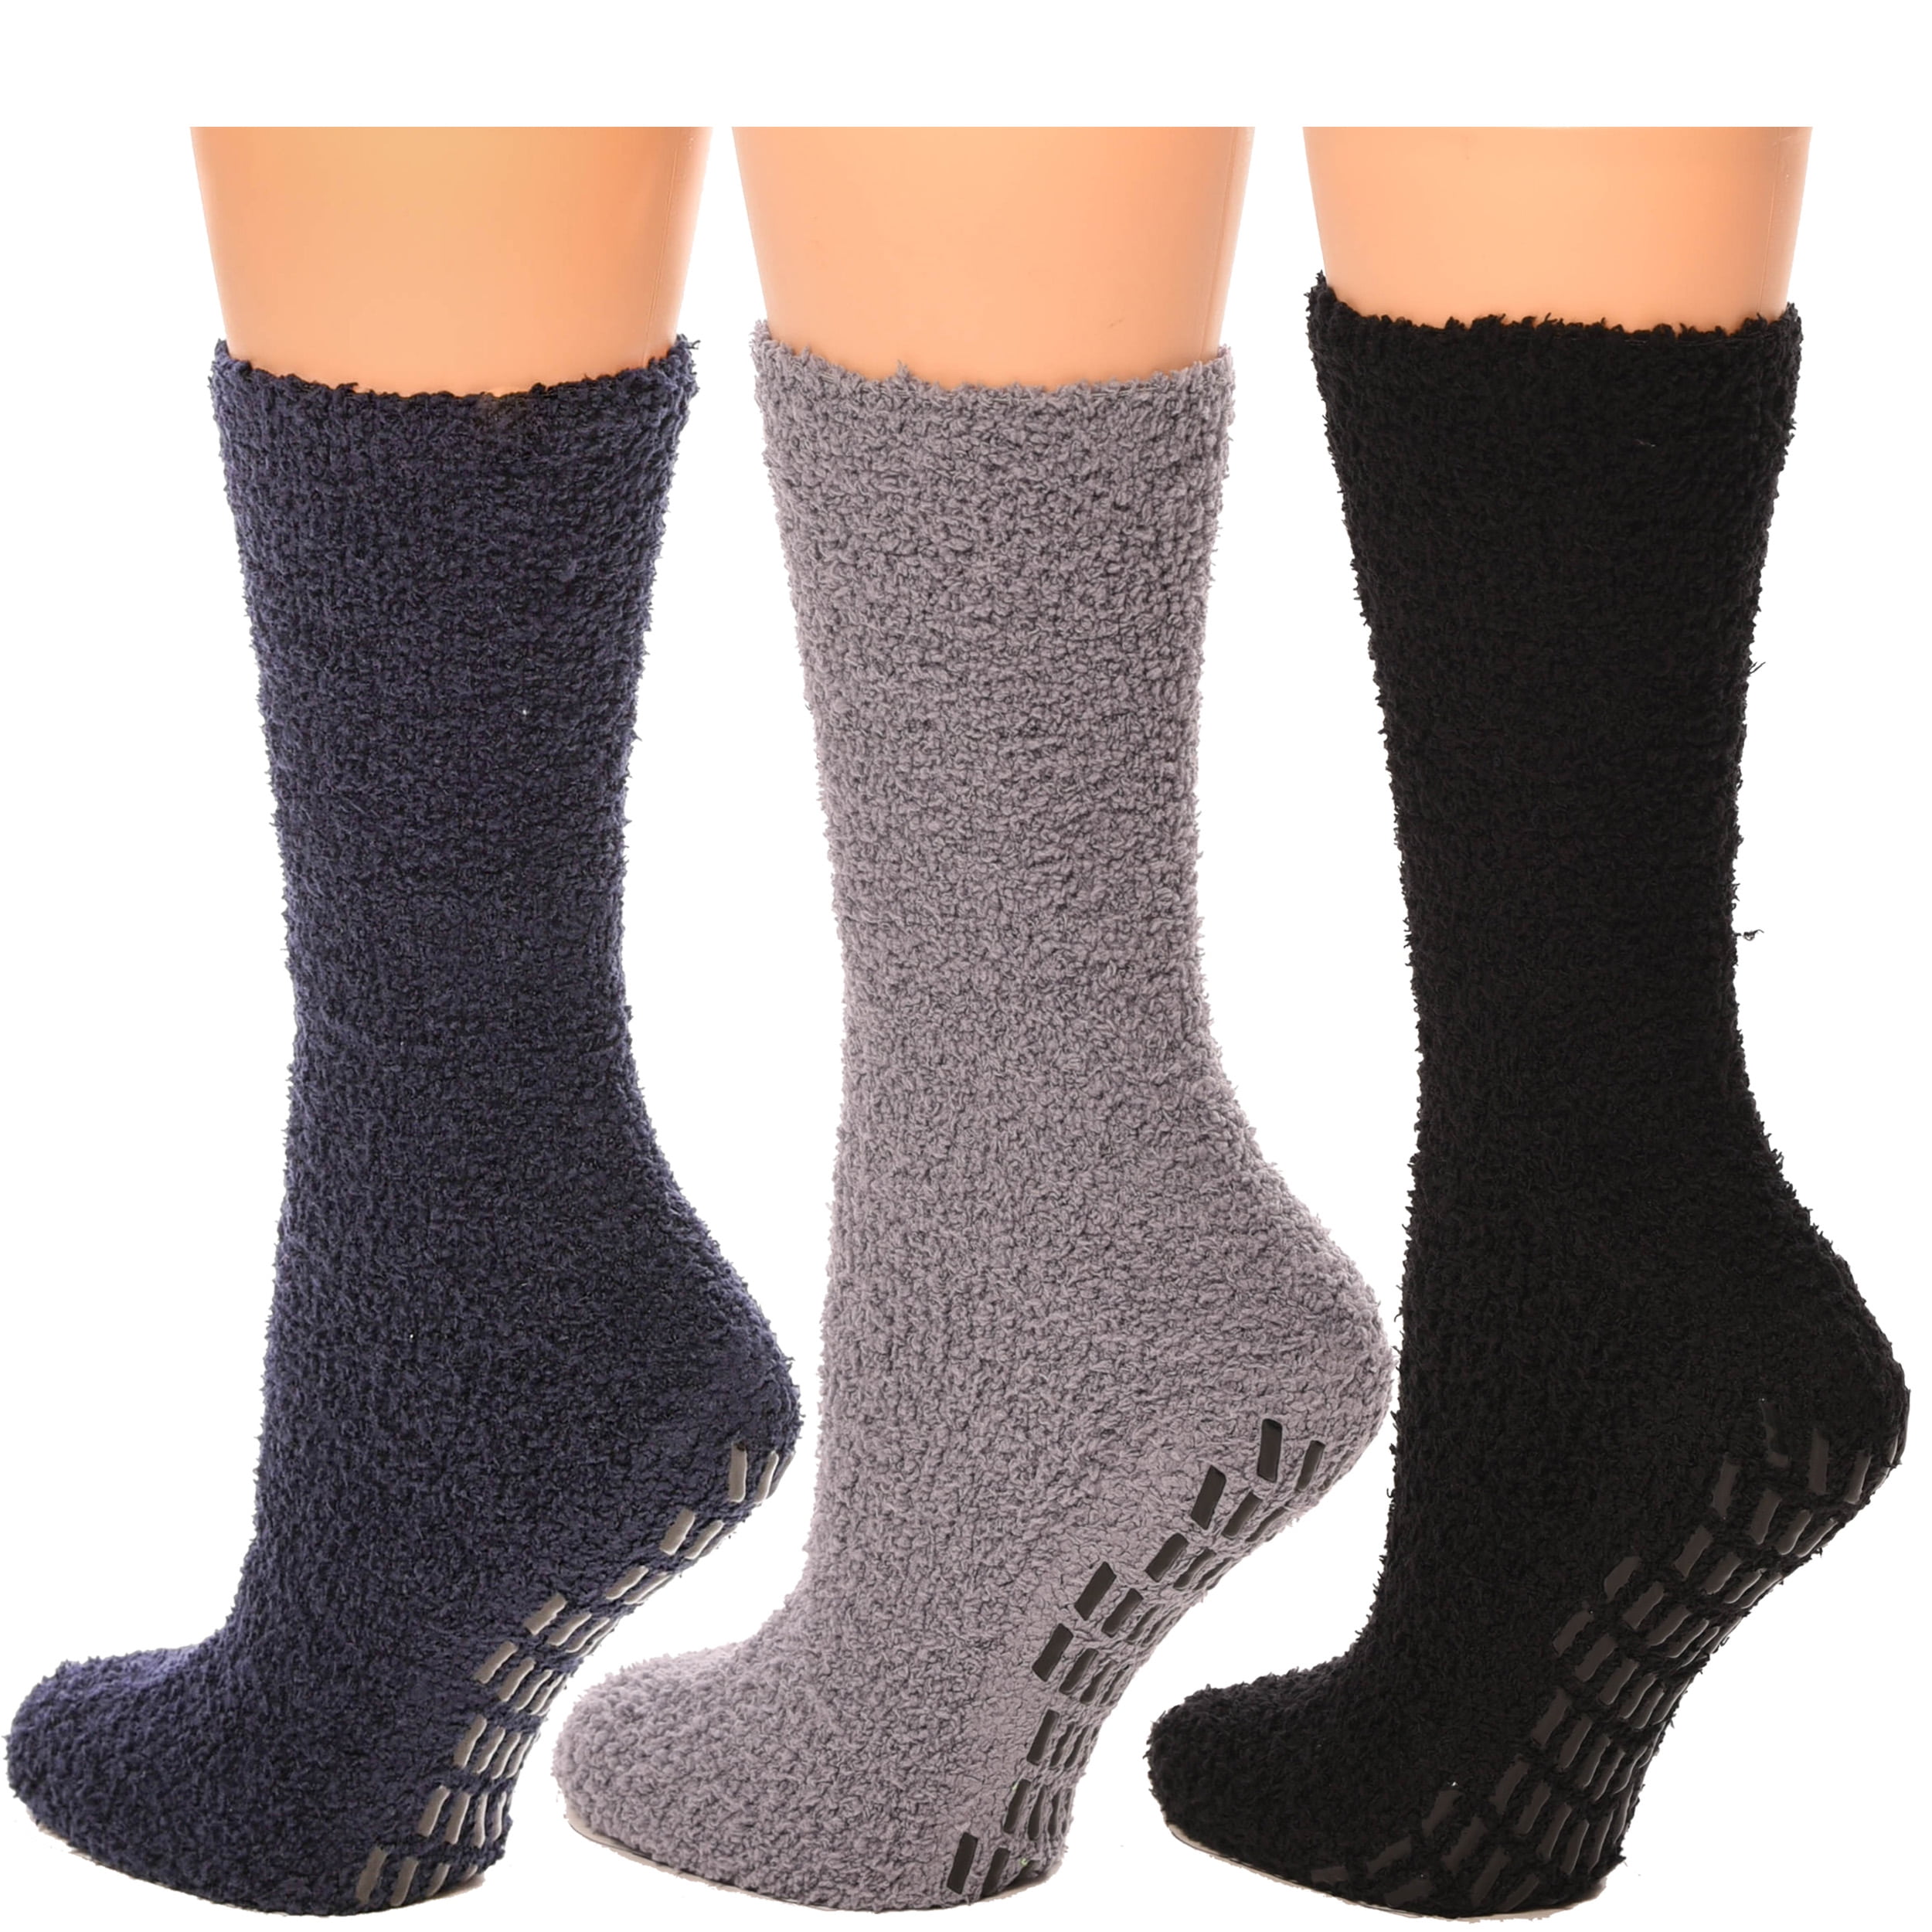 New Non Skid/Slip Socks With Gripper Bottom Hospital Slipper Socks 1-3 pairs